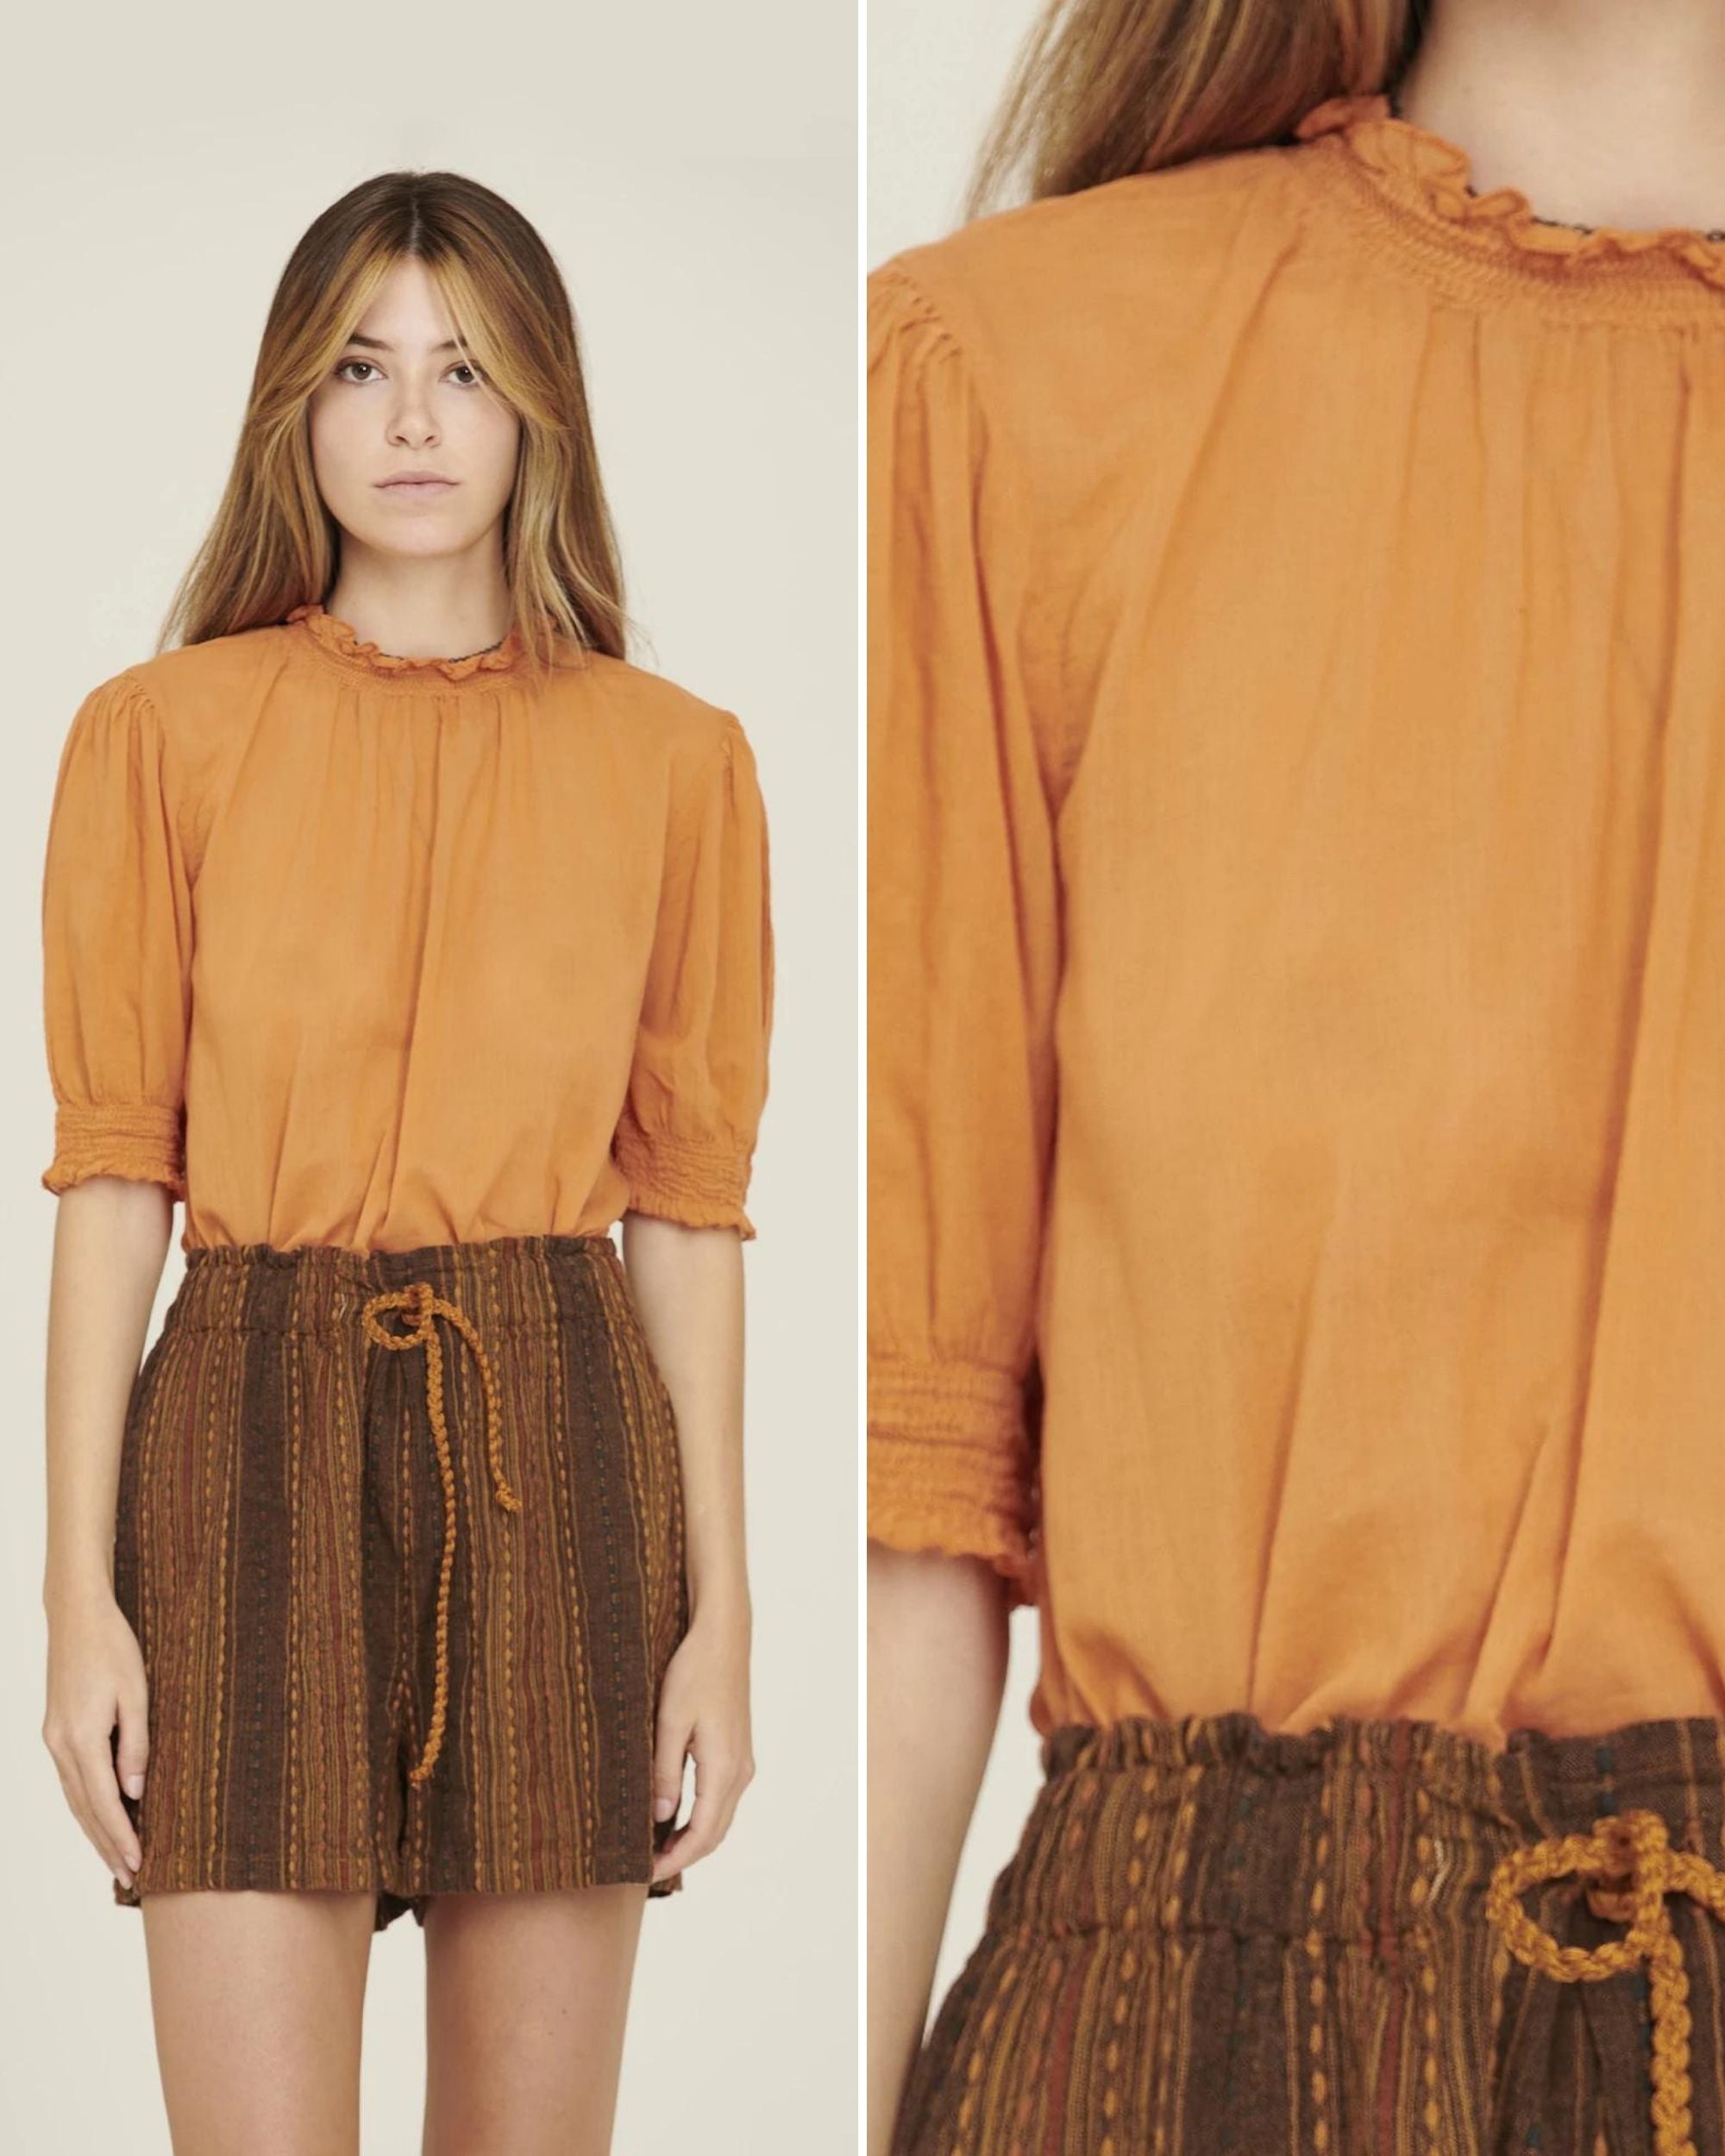 BONITA - Blusa in cotone organico, colore arancione e fantasia Voile